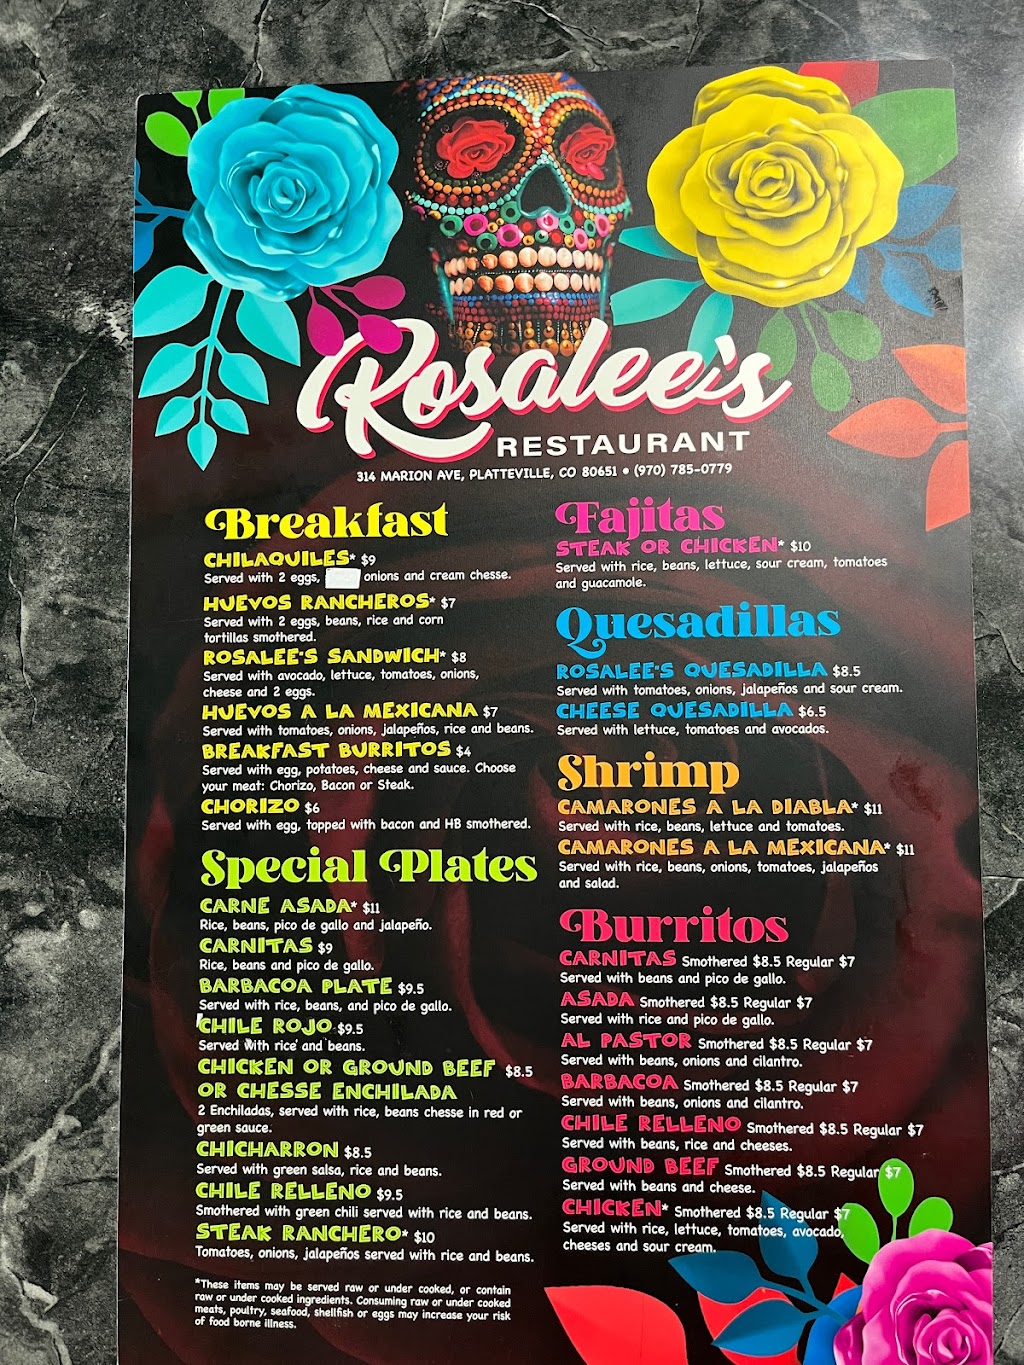 Rosalees Restaurant | 314 Marion Ave, Platteville, CO 80651 | Phone: (970) 785-1149